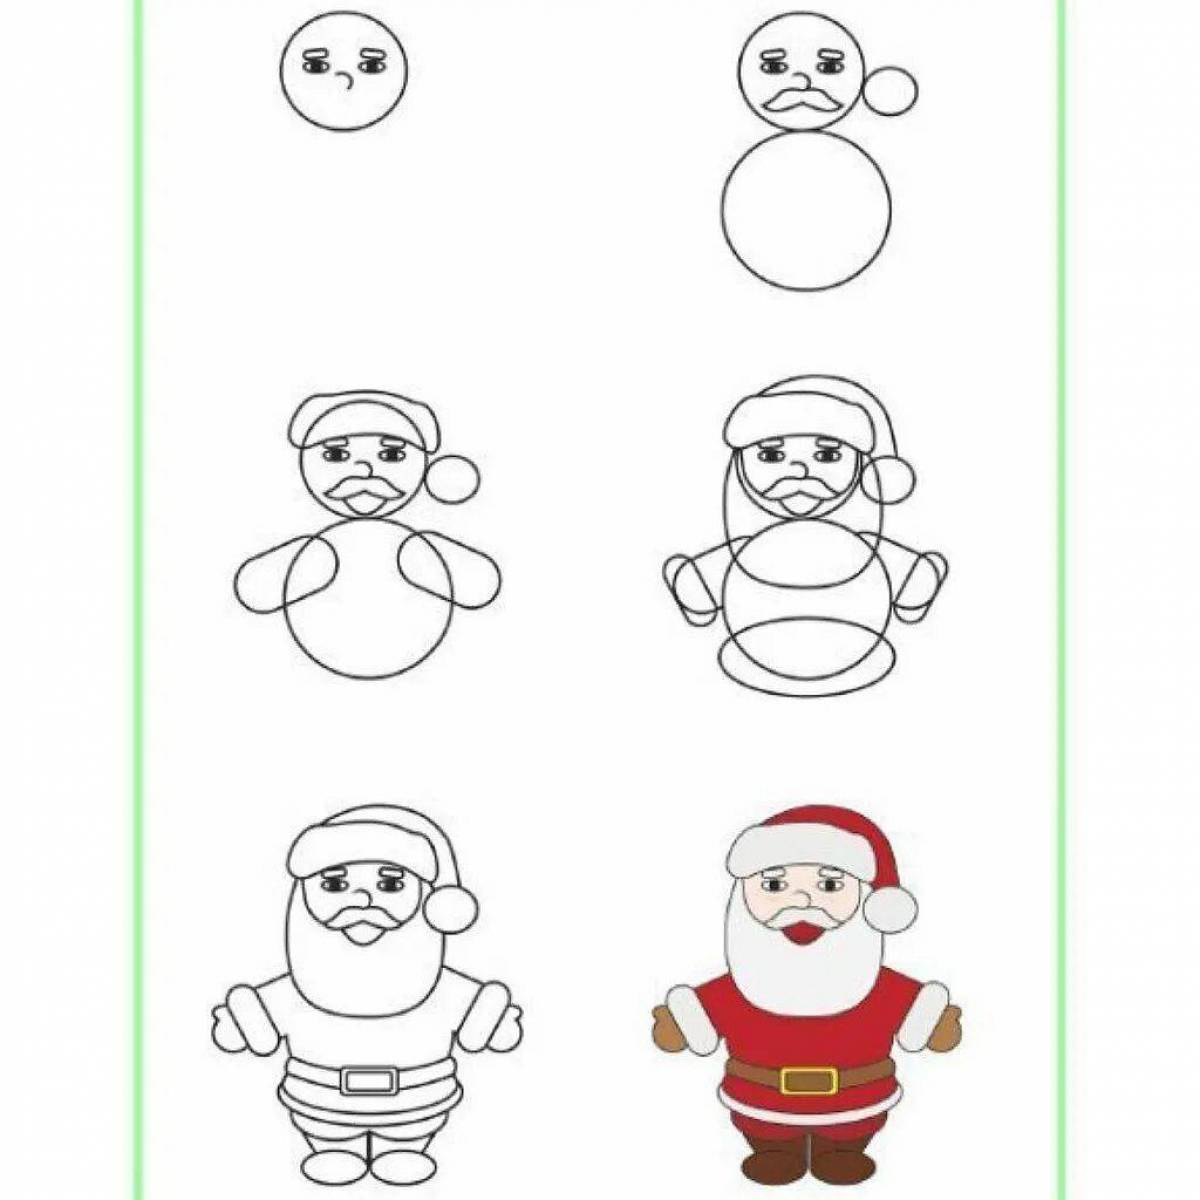 Как нарисовать красивого деда. Поэтапное рисование Деда Мороза. Как нарисовать Леда Мороза. Этапы рисования Деда Мороза для детей. Новогодние рисунки пошагово.